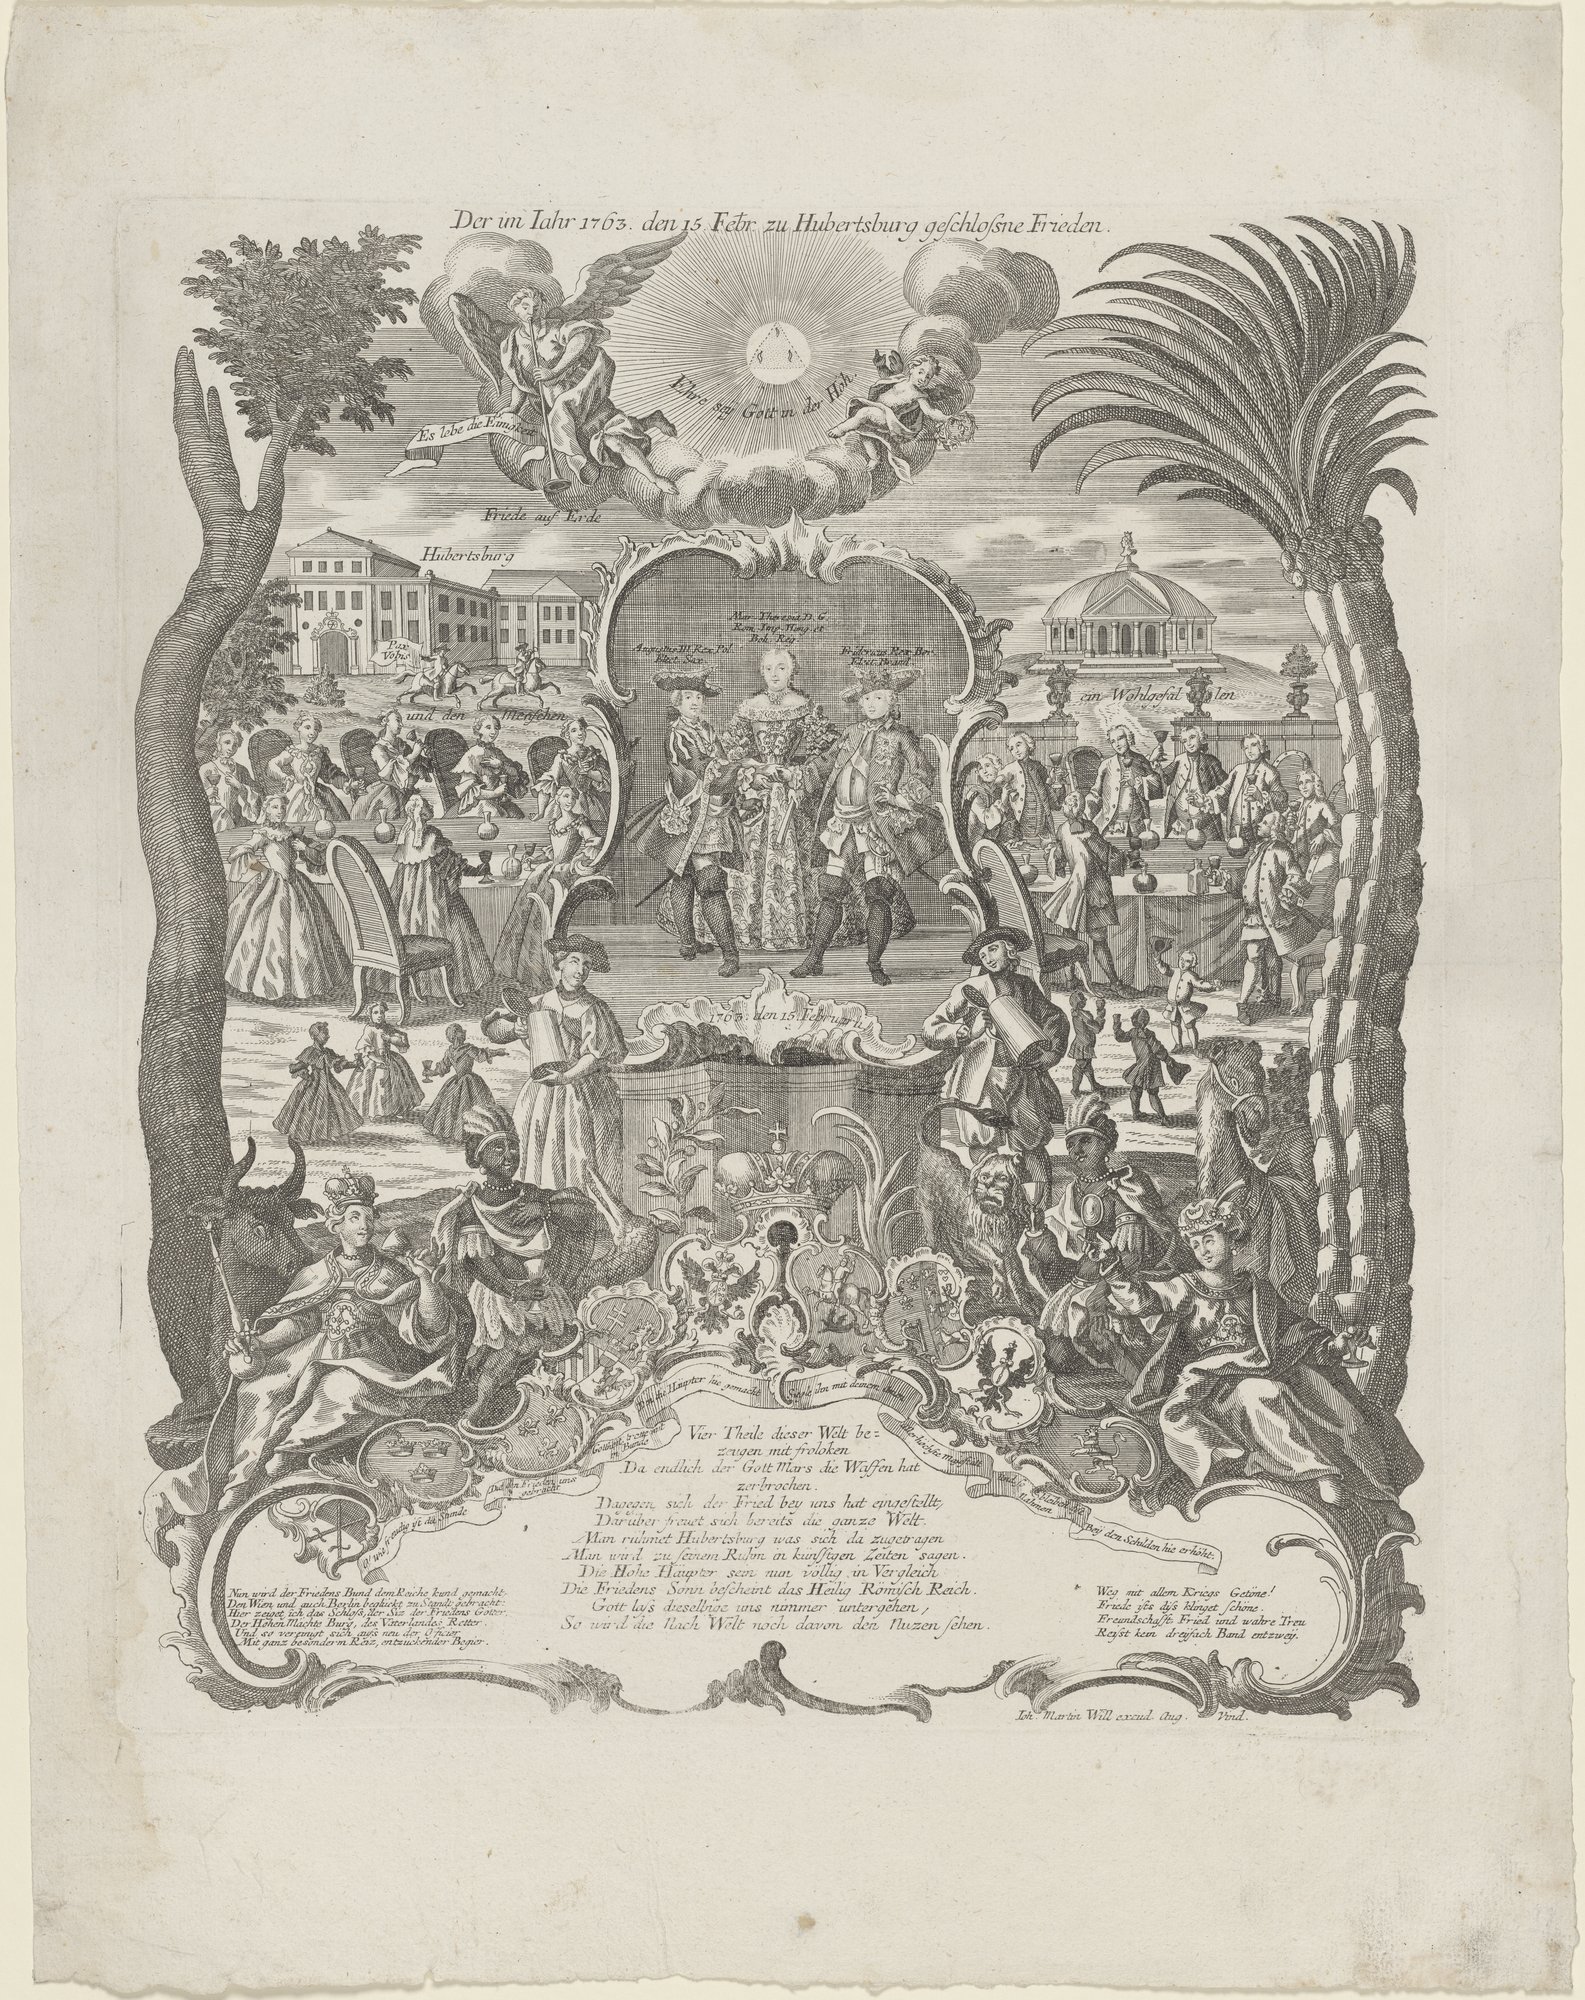 Der im Iahr 1763. den 15. Febr. zu Hubertusburg geschlossene Frieden. (Kulturstiftung Sachsen-Anhalt Public Domain Mark)